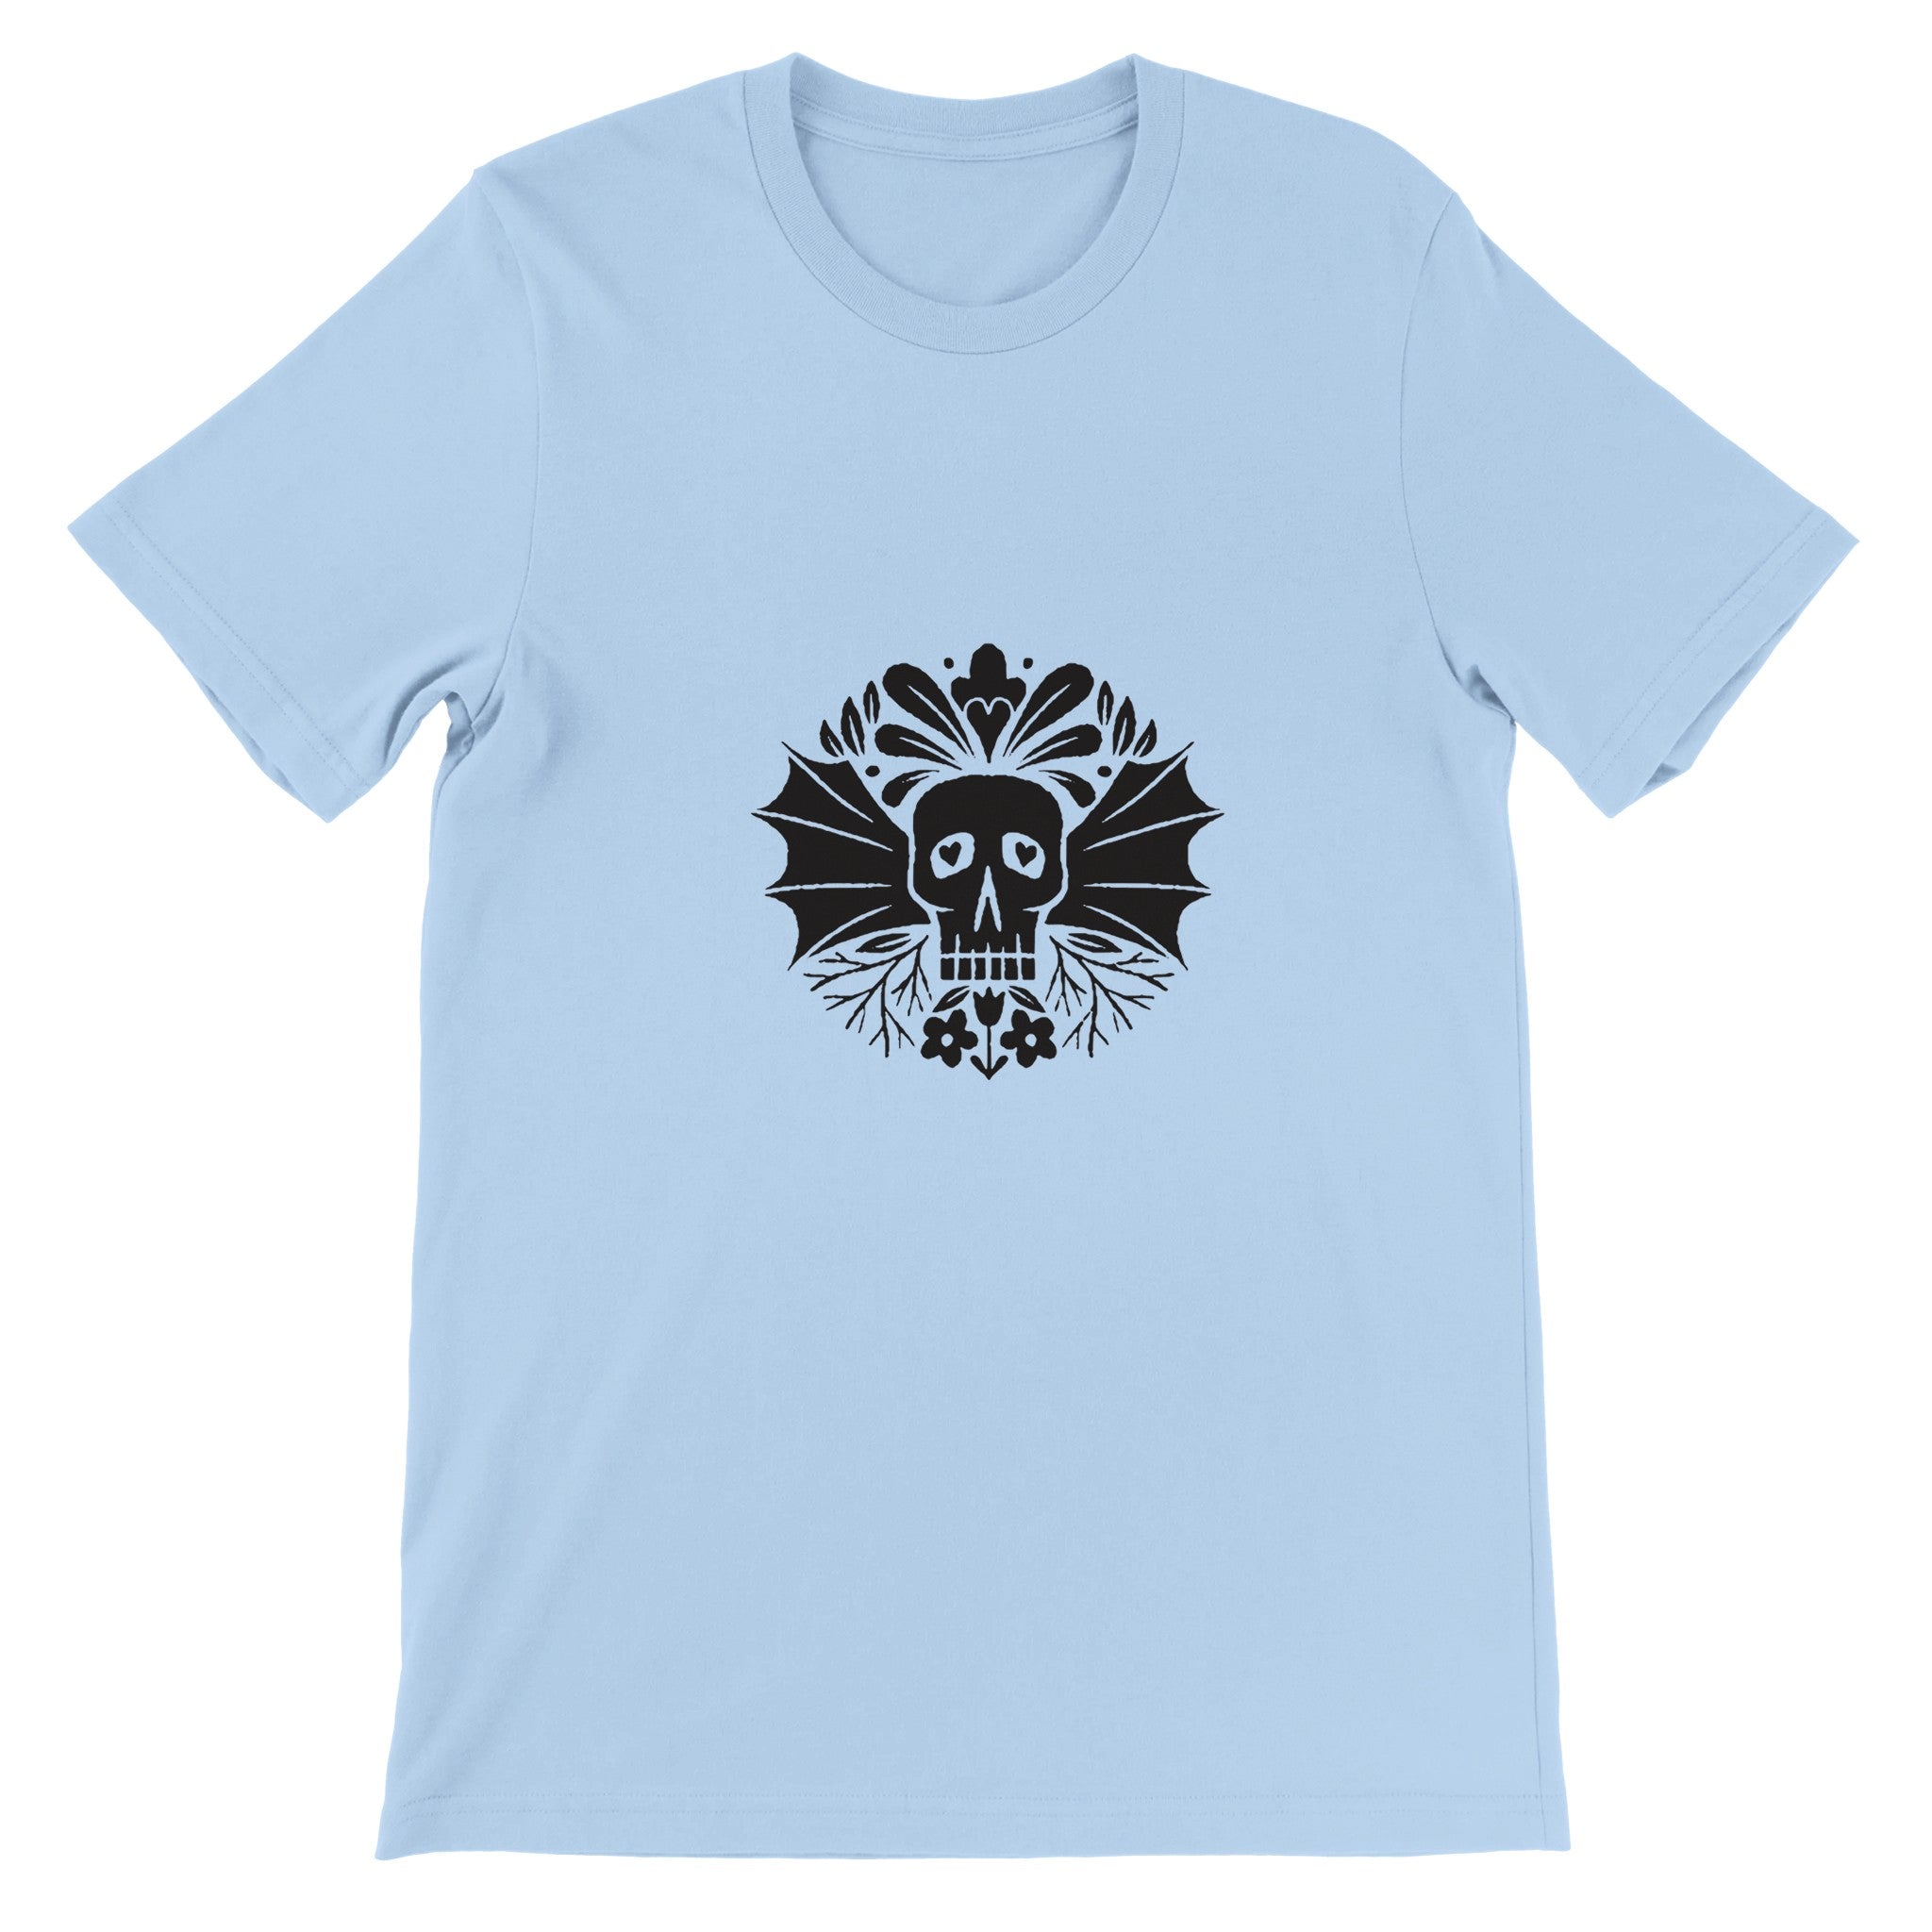 SKULL WINGS Crewneck T-shirt - Optimalprint